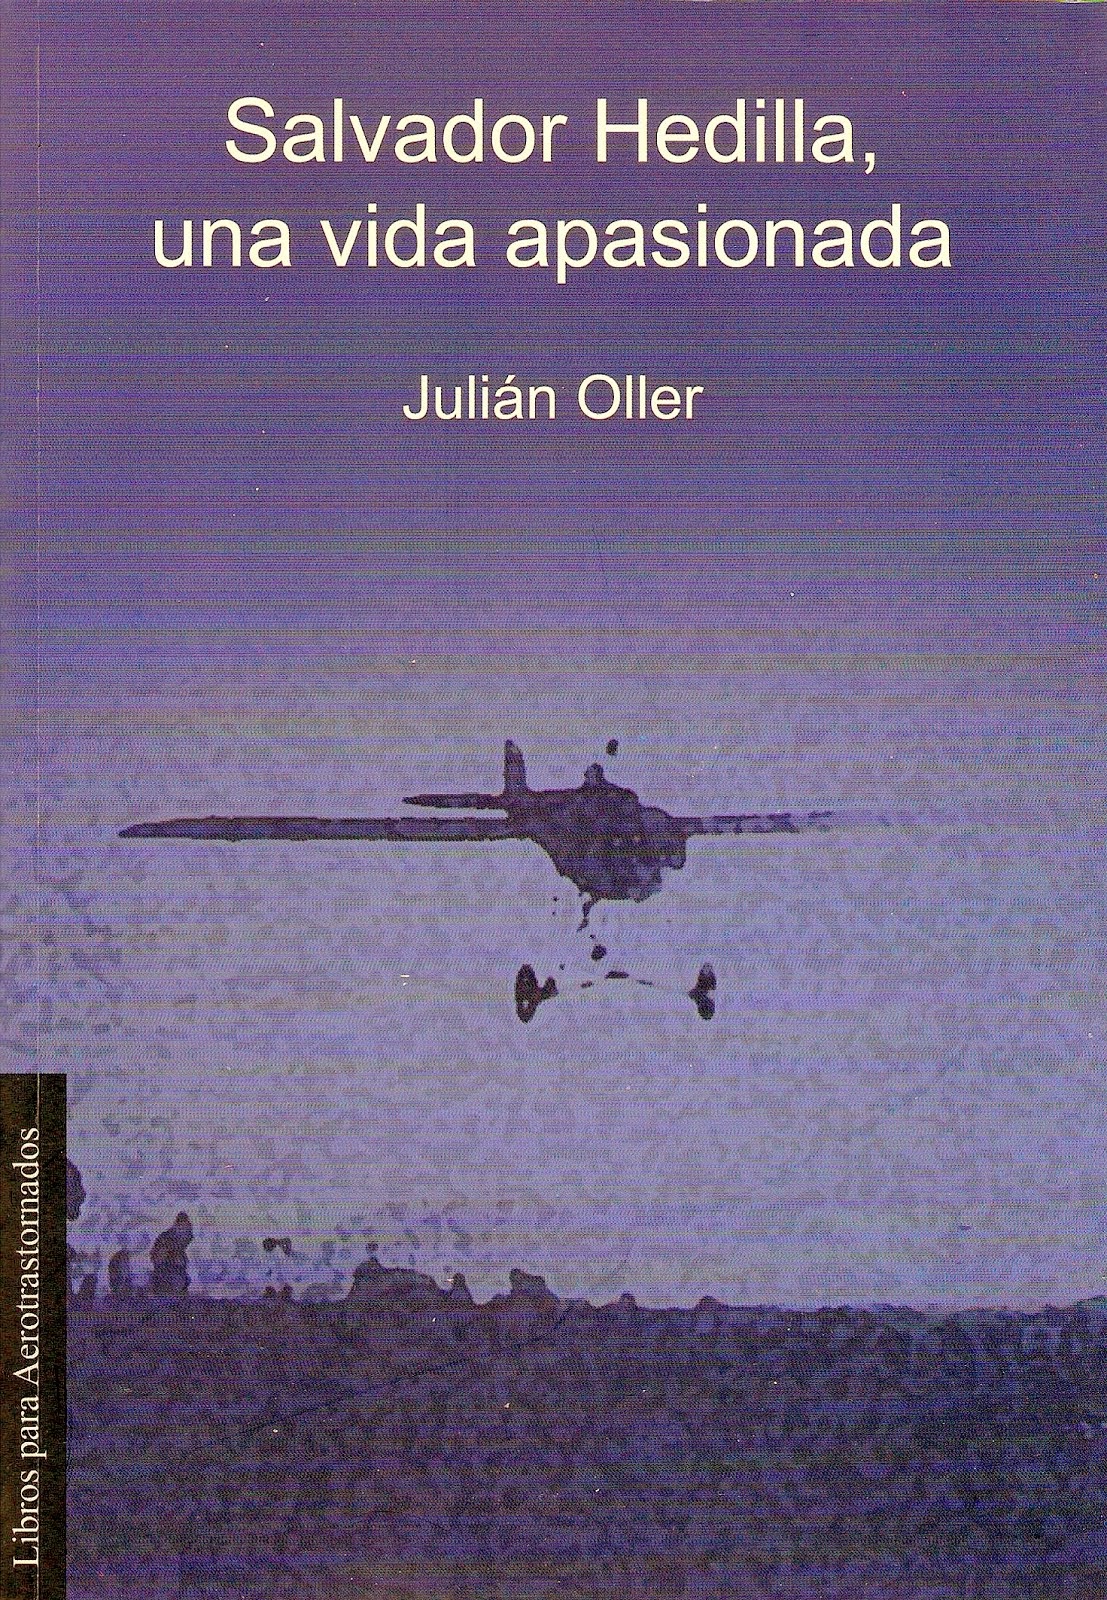 2012-11-30.- Presentación en l'Aeroteca del libro "Salvador Hedilla, una vida apasionada".